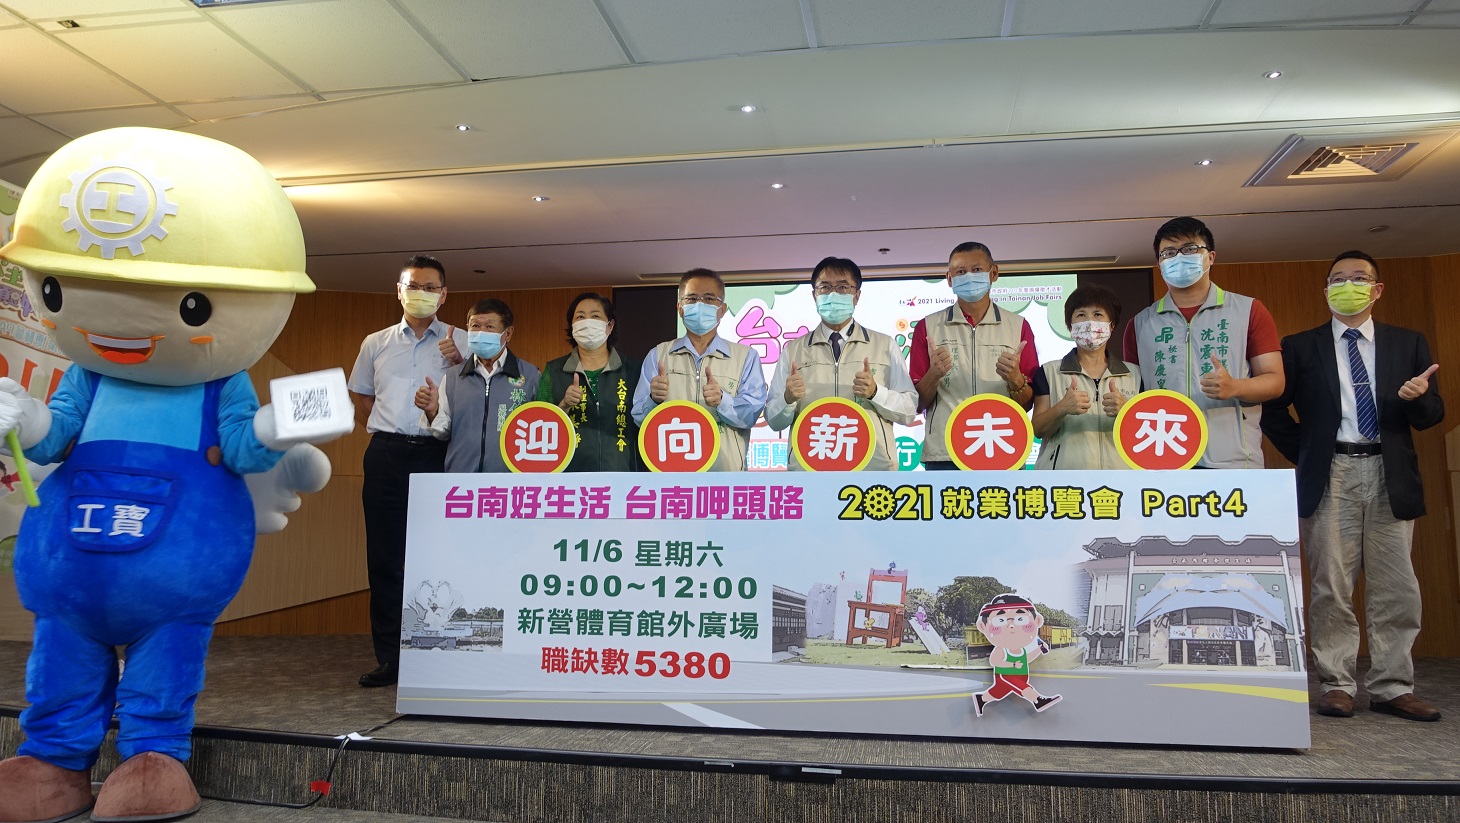 臺南第4場就業博覽會5,380個職缺周末新營登場 